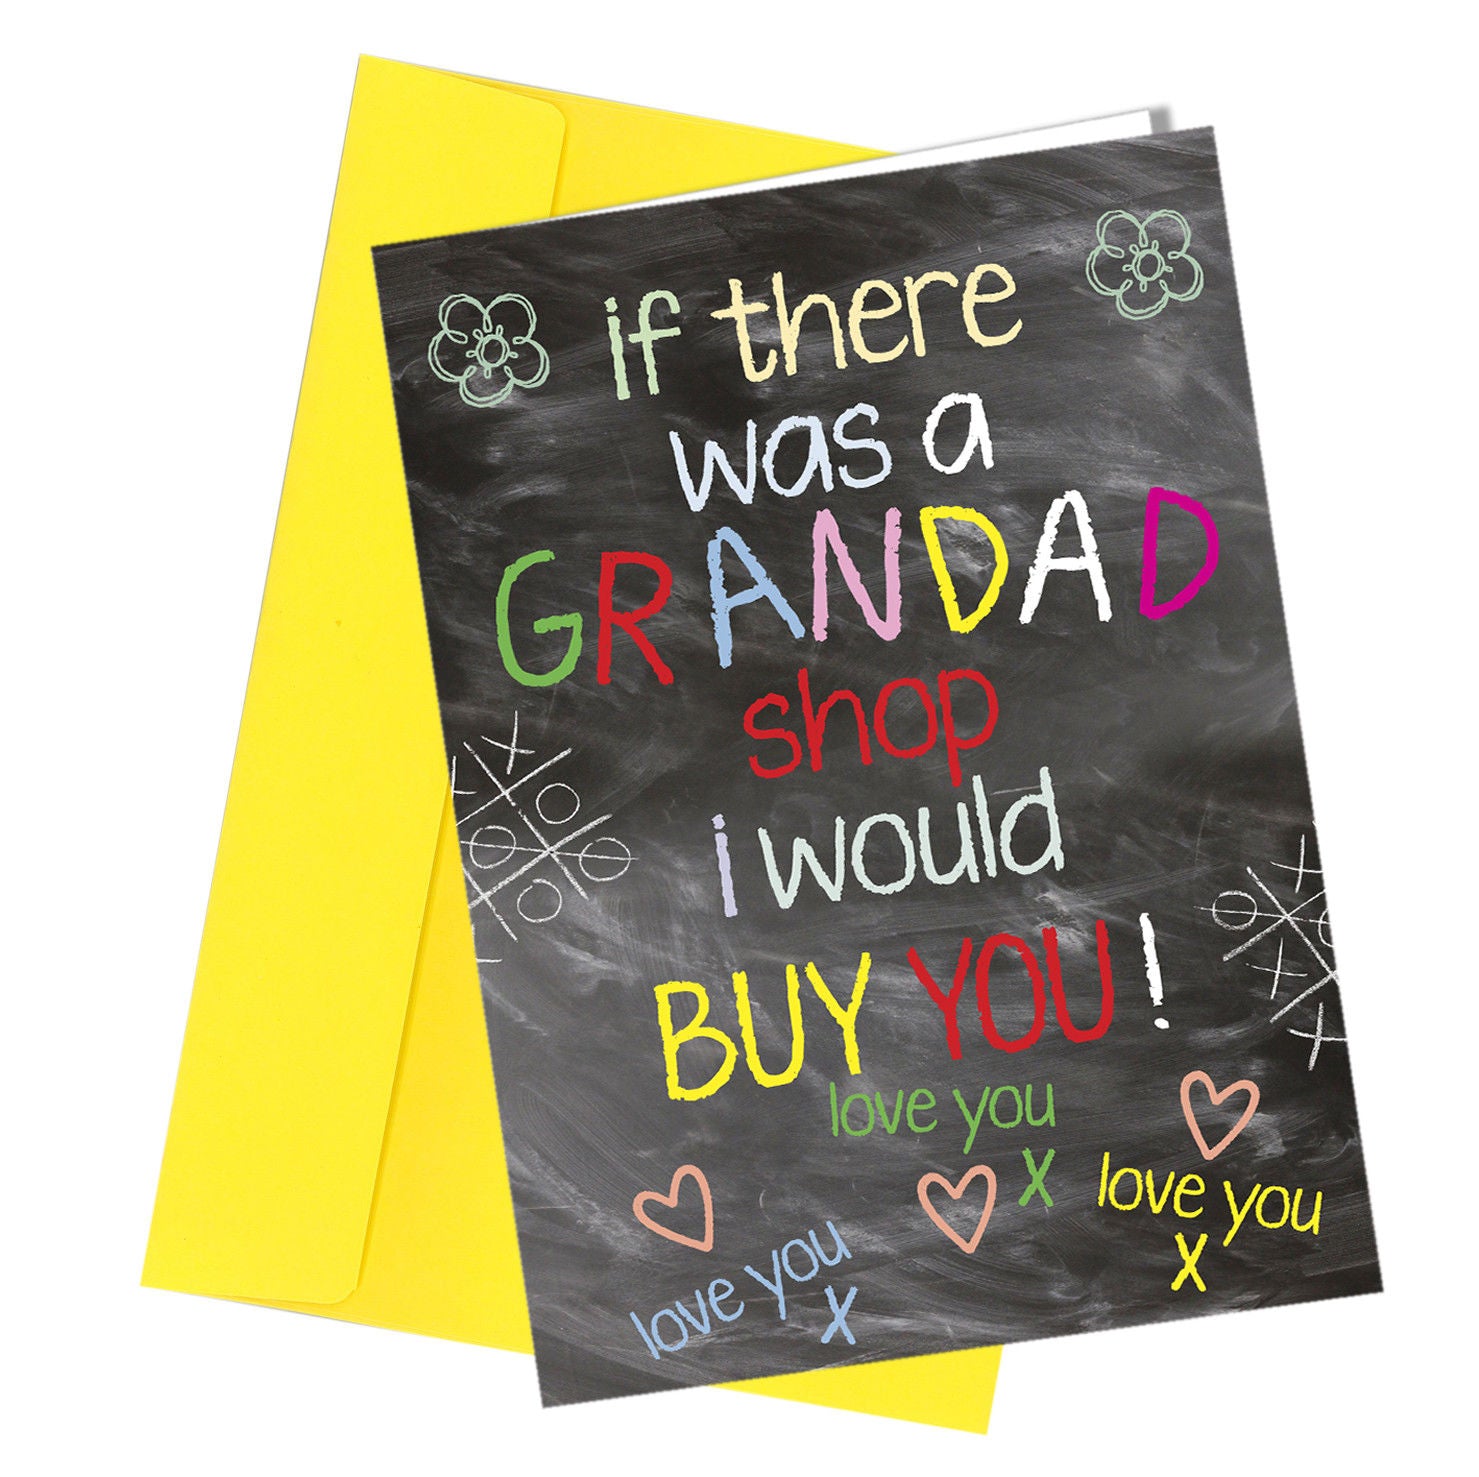 #273 Grandad Shop